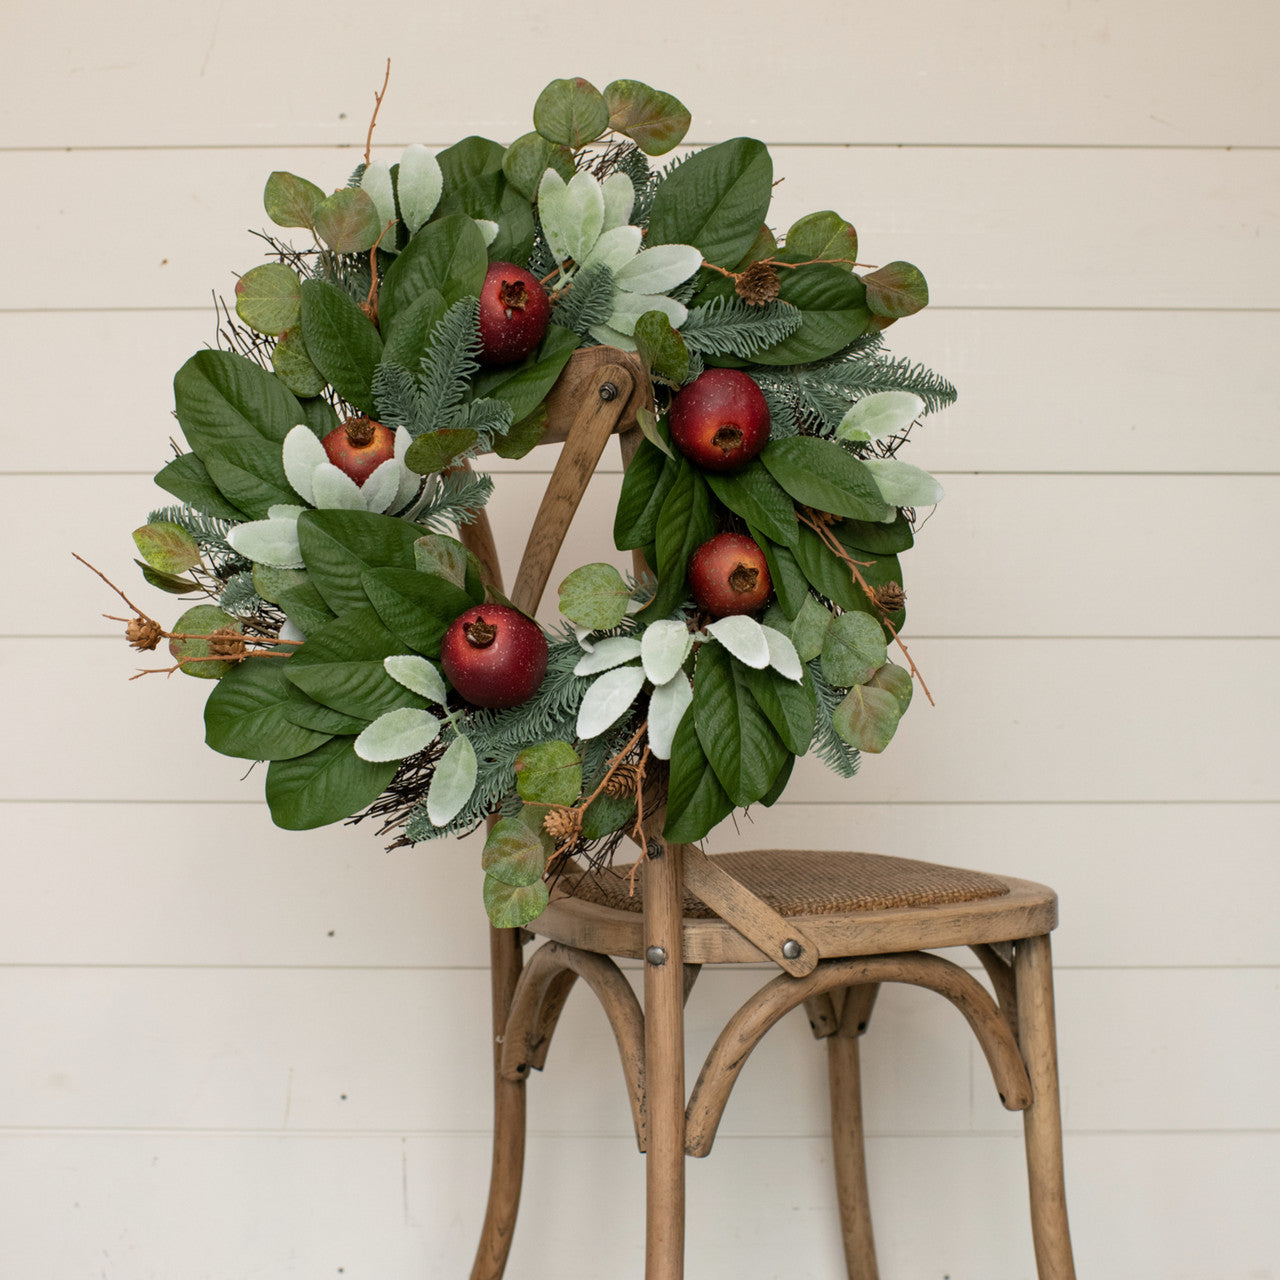 24" Mixed Greenery & Pomegranate Wreath